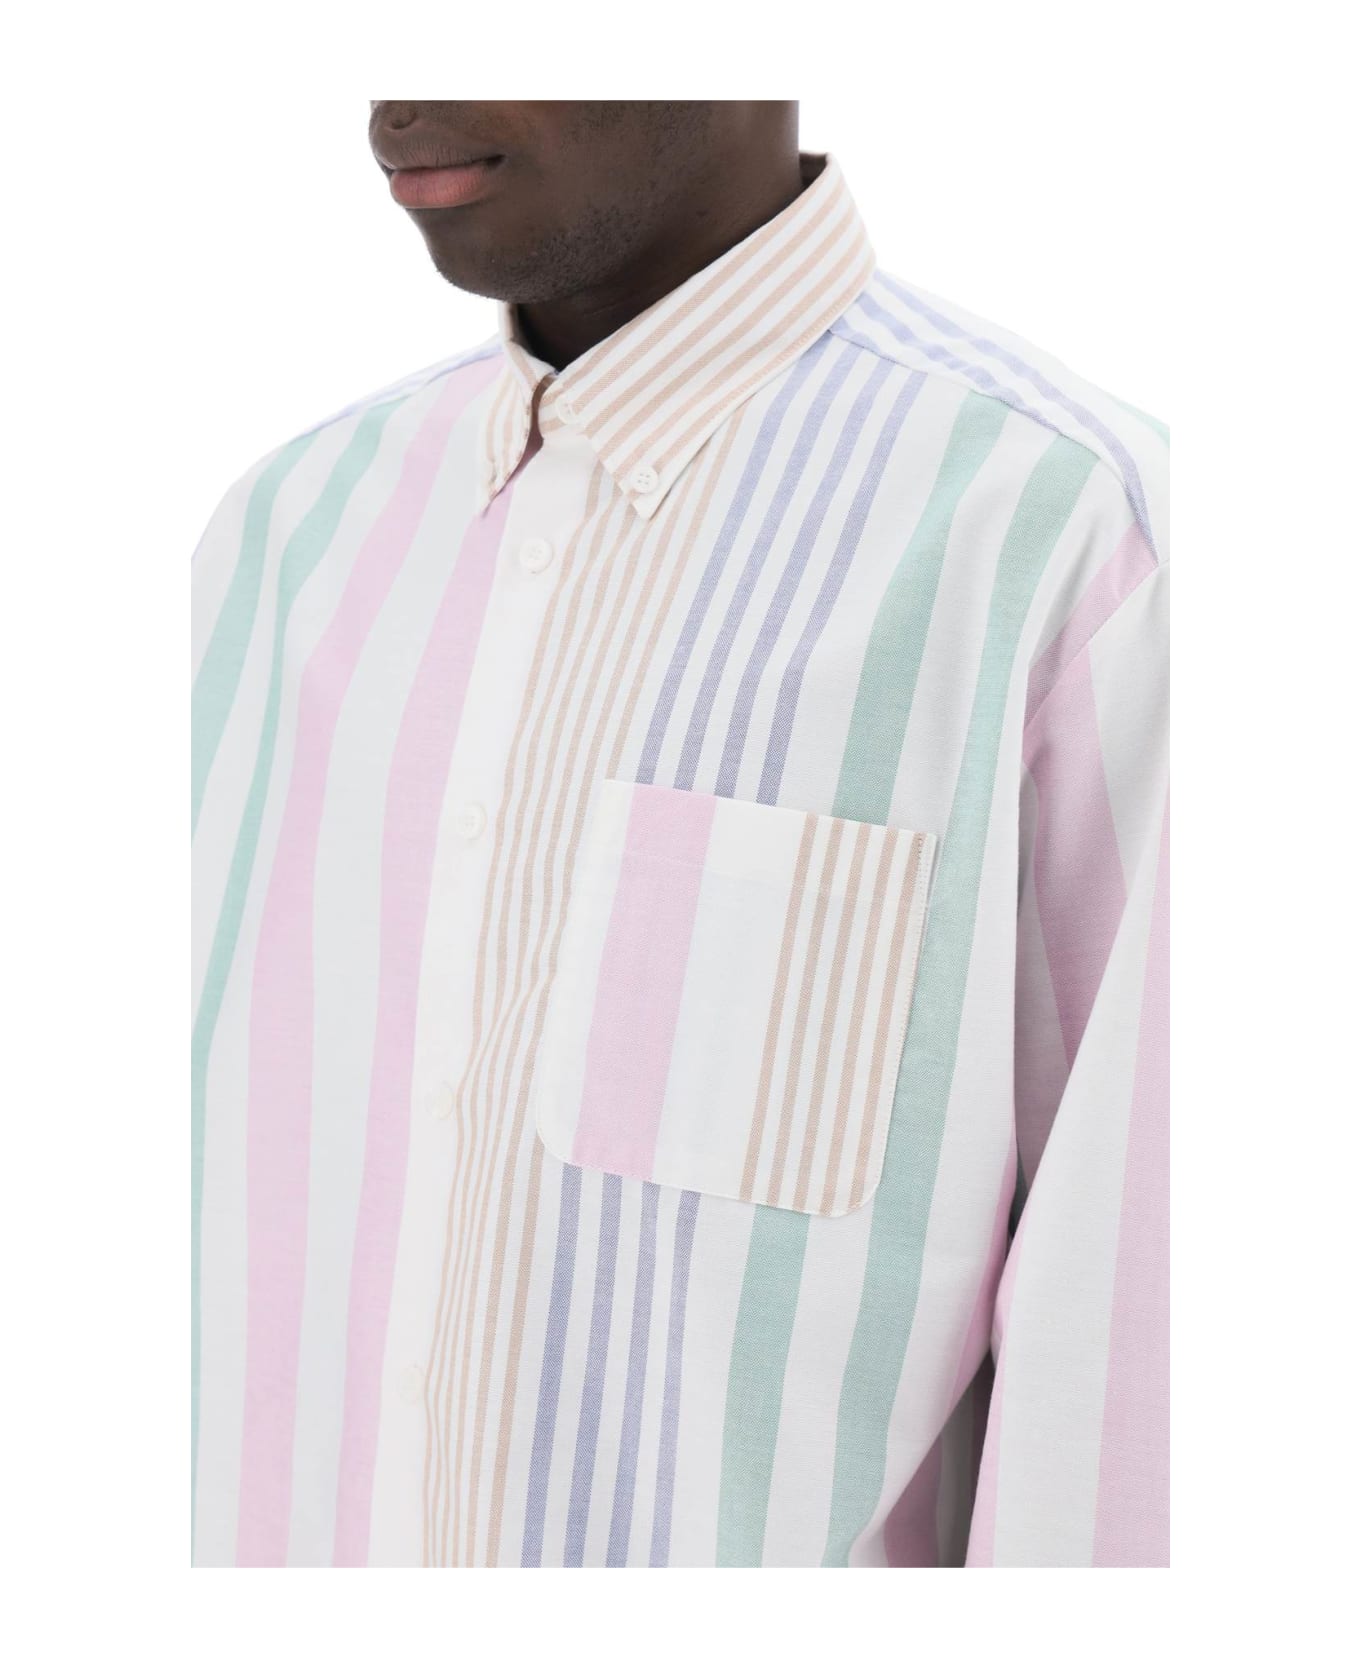 A.P.C. Mateo Striped Oxford Shirt - Saa Multicolor シャツ